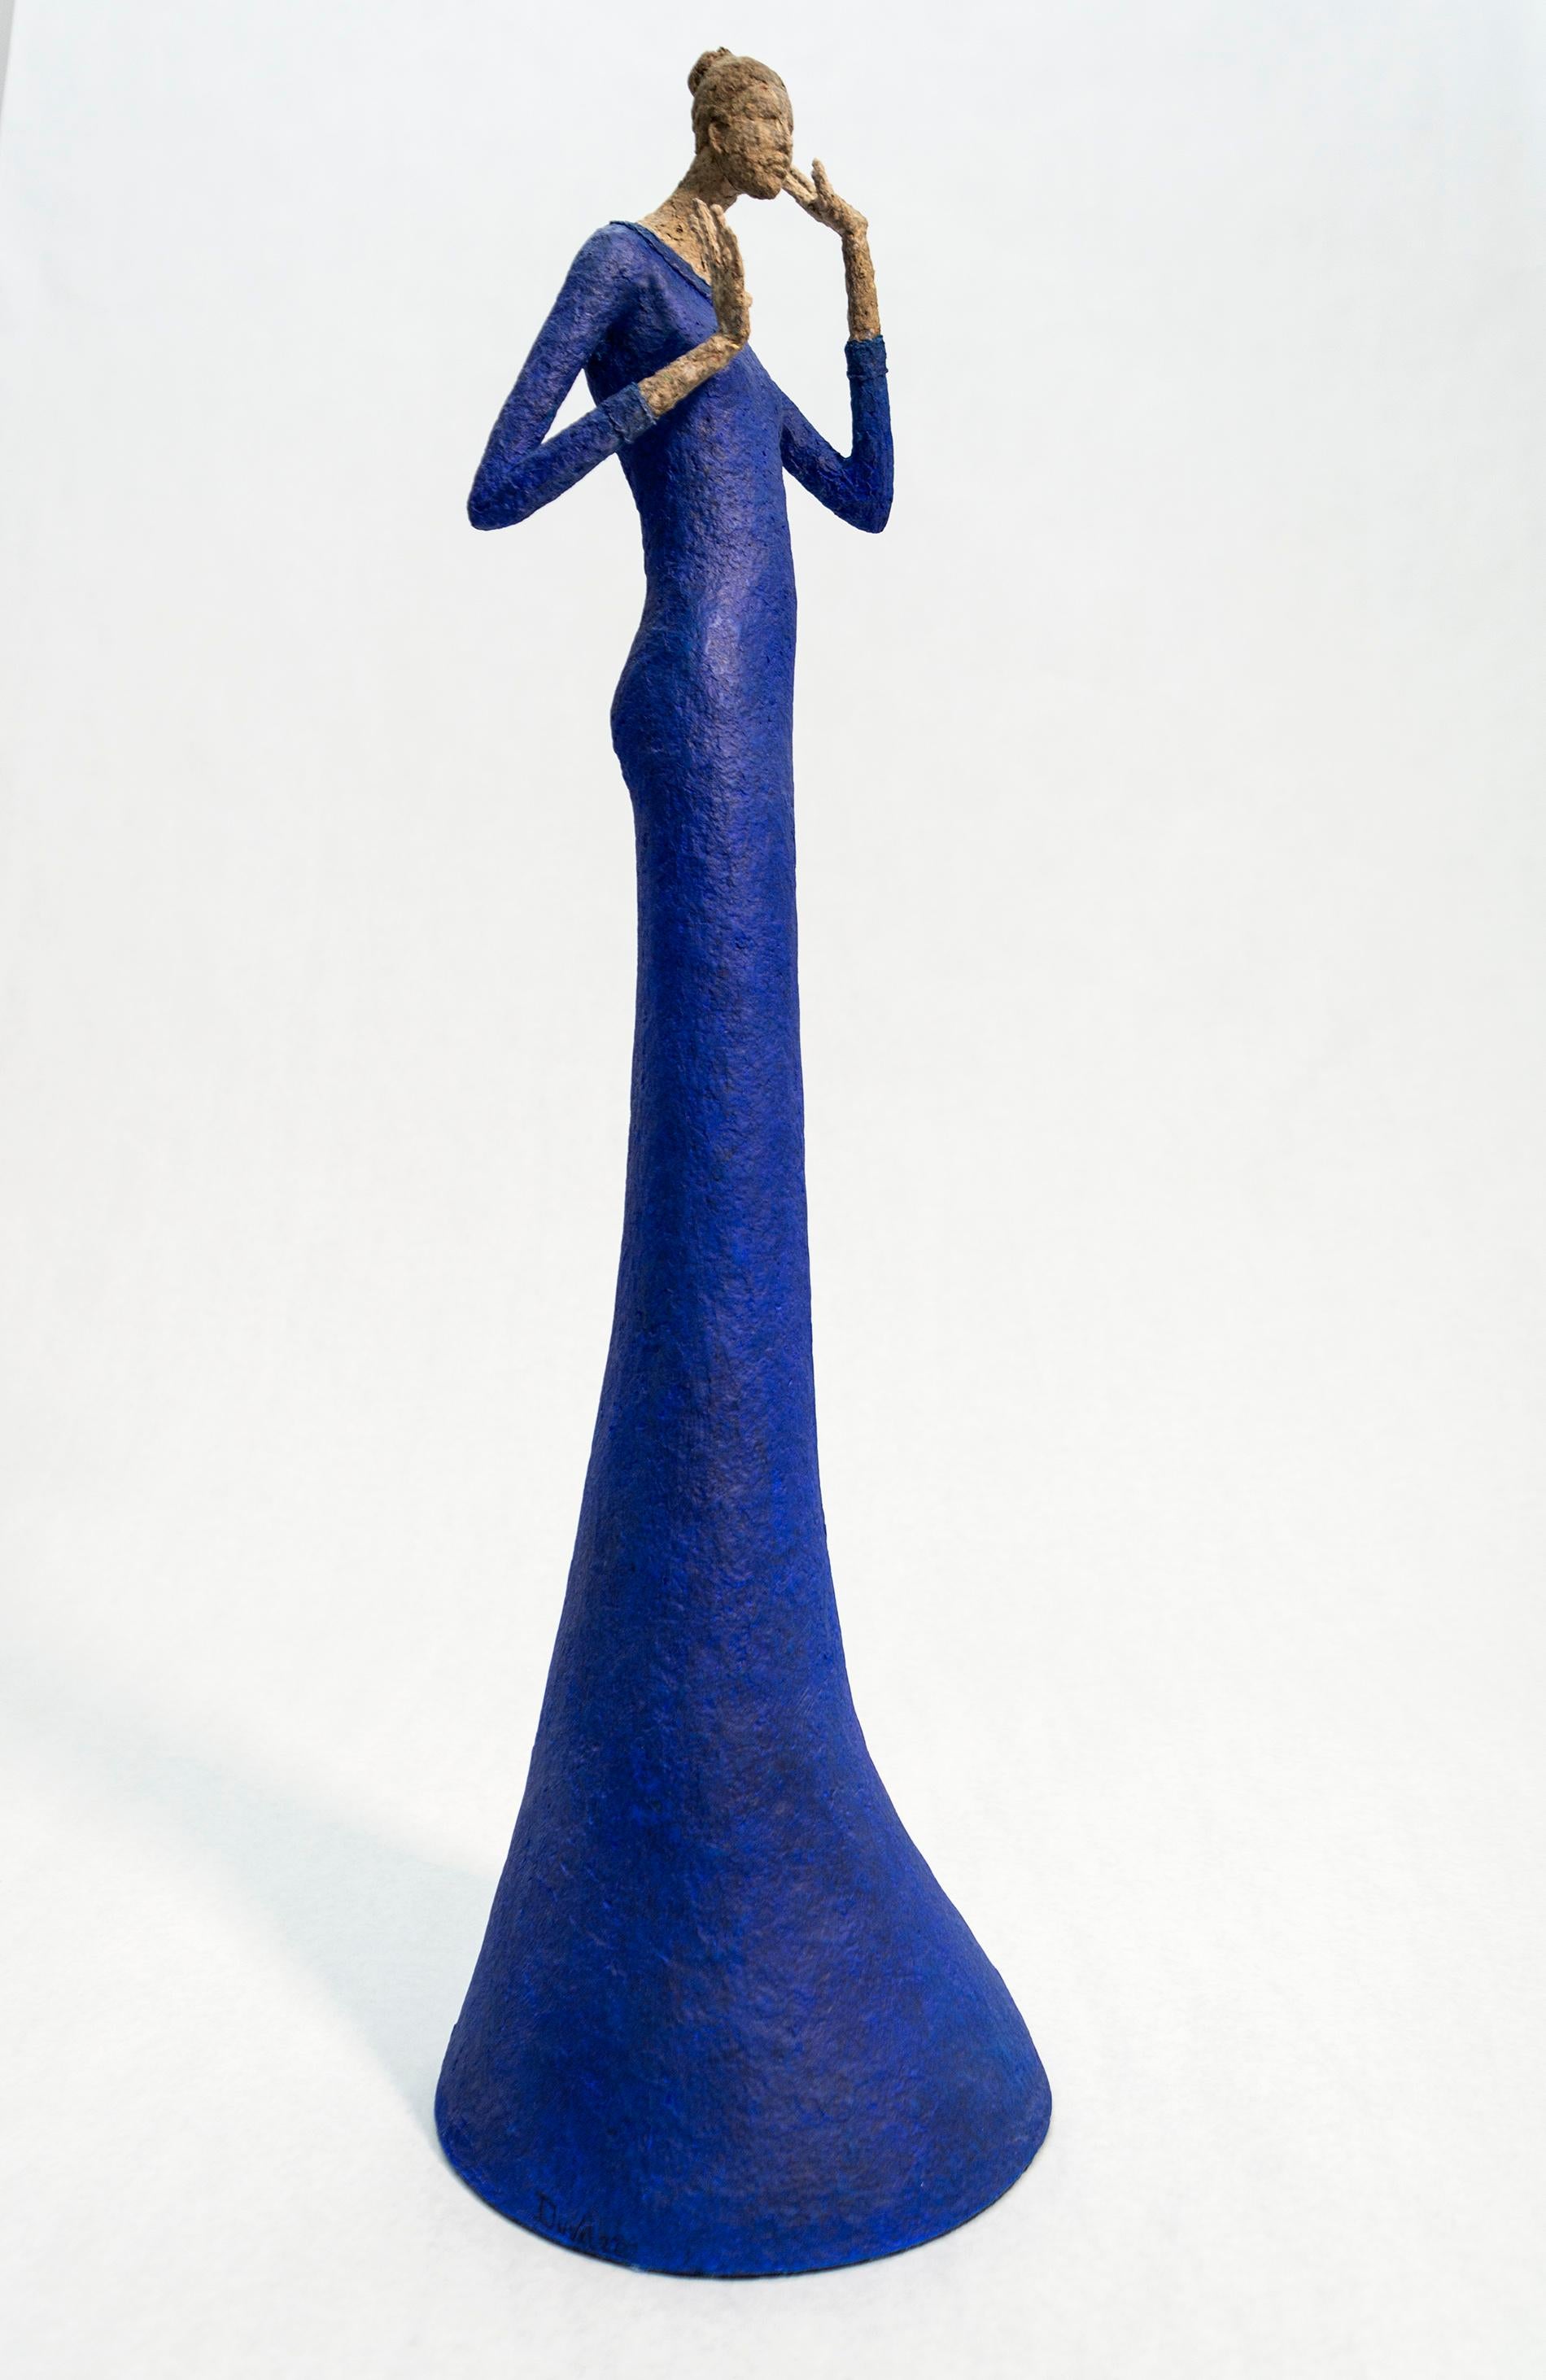 Celestine - sculpture expressive, texturée, féminine, figurative, en faïence de papier - Gris Figurative Sculpture par Paul Duval